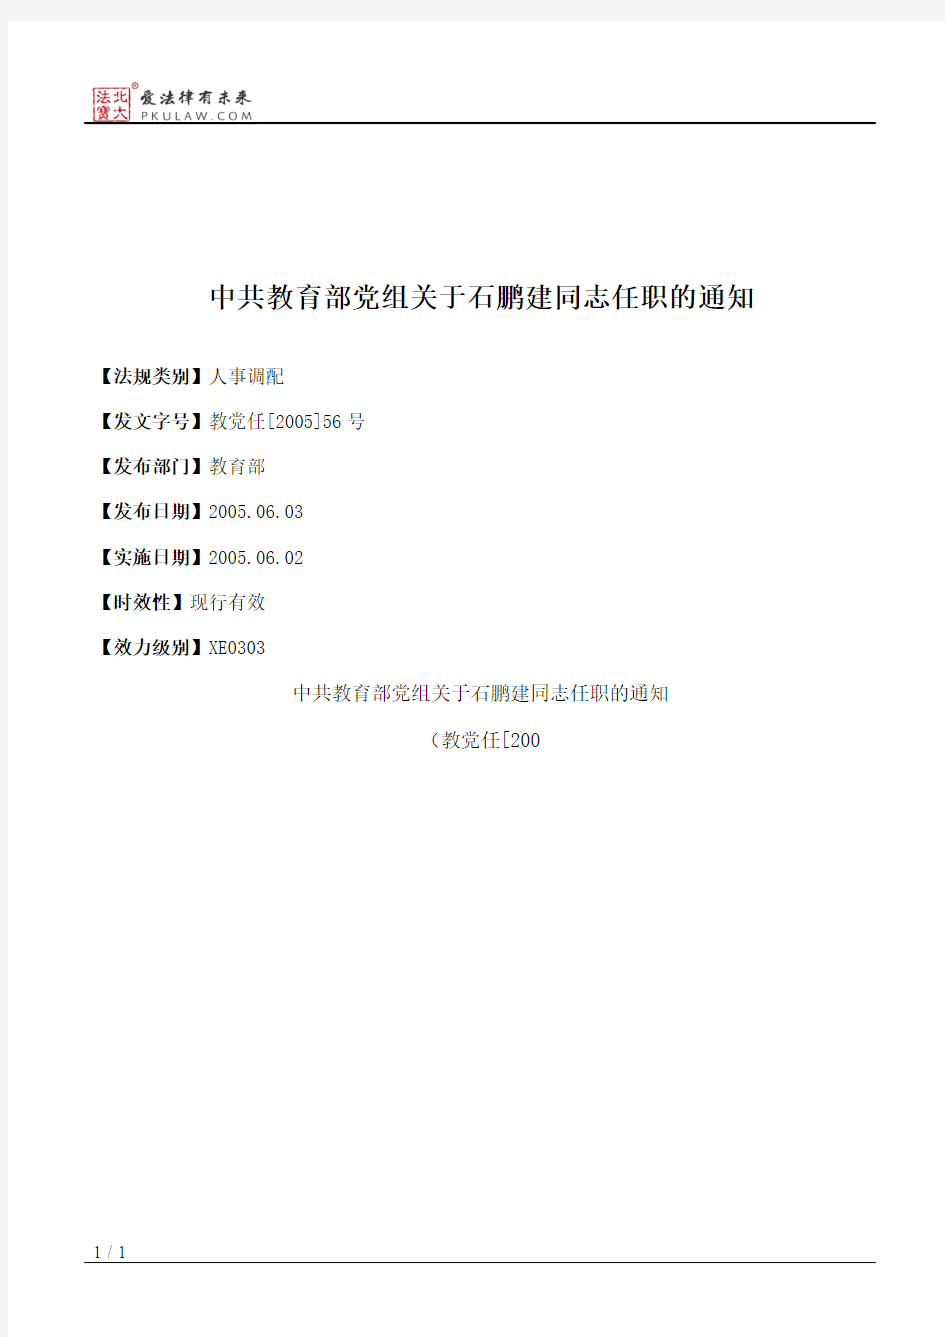 中共教育部党组关于石鹏建同志任职的通知